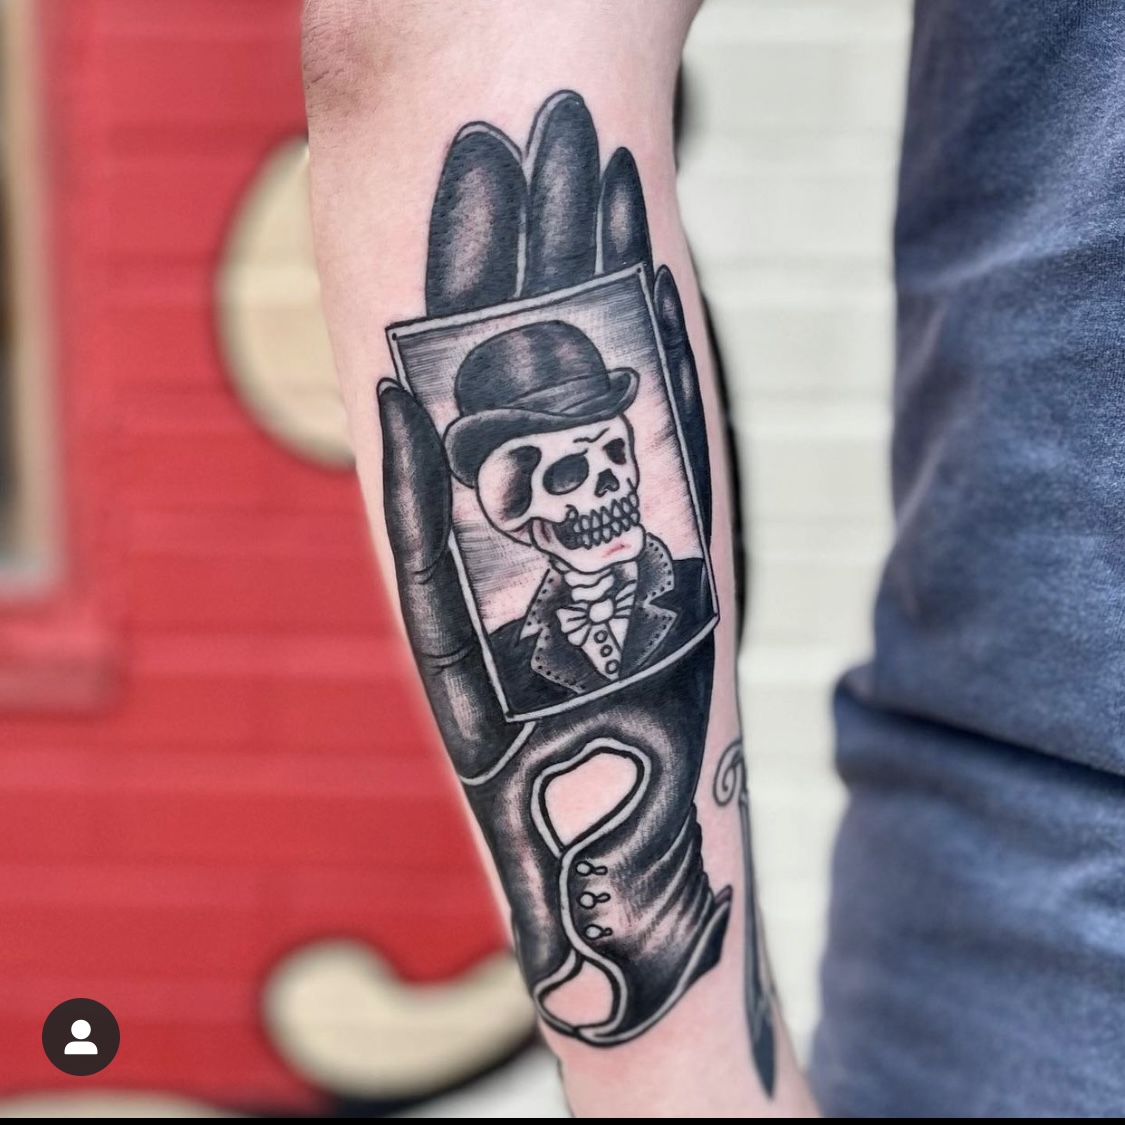 Skull and hand tattoo from dallas tattoo artists